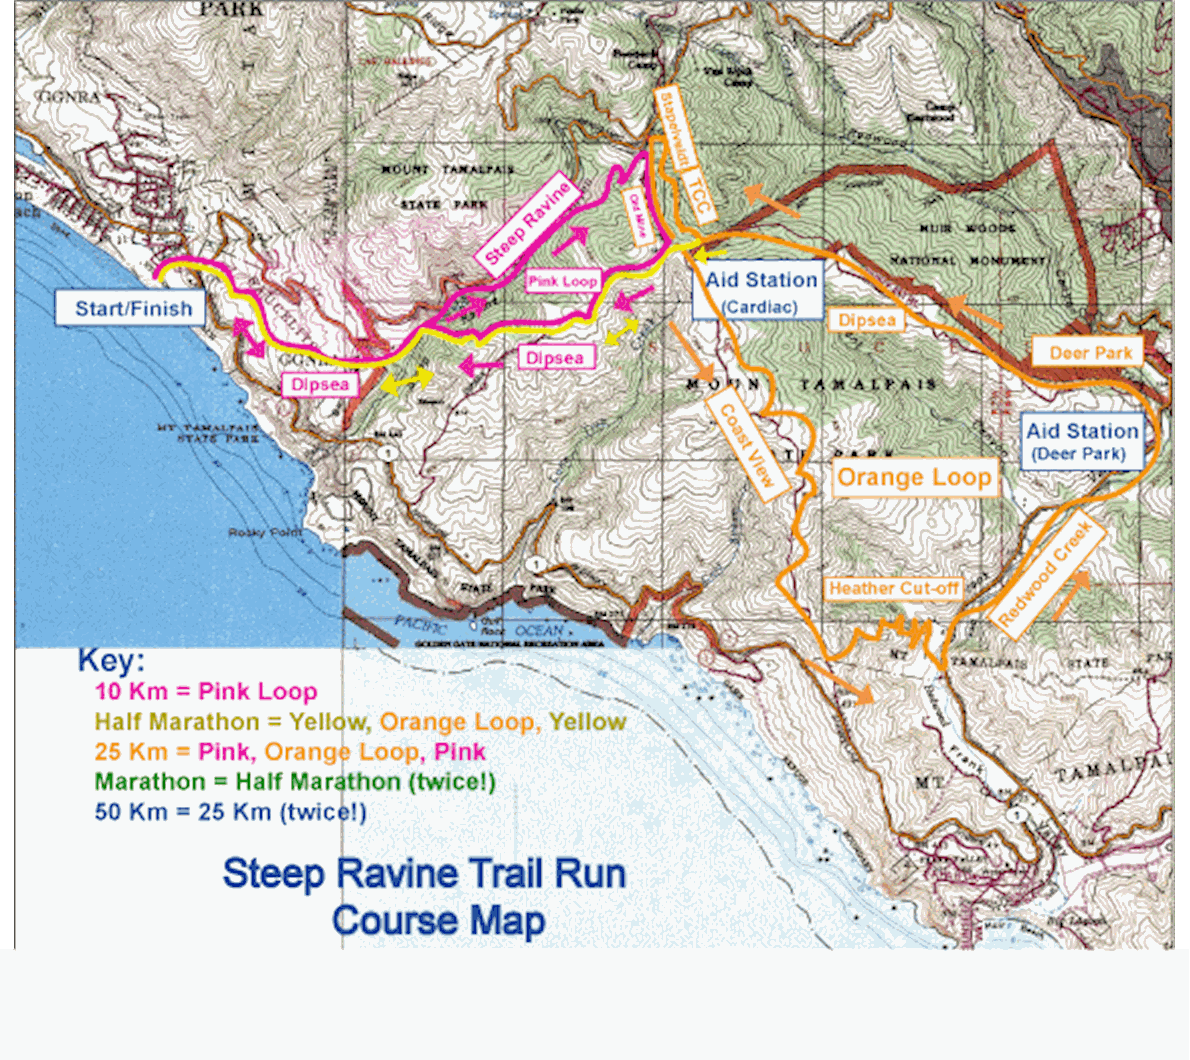 Steep Ravine Trail Run Route Map